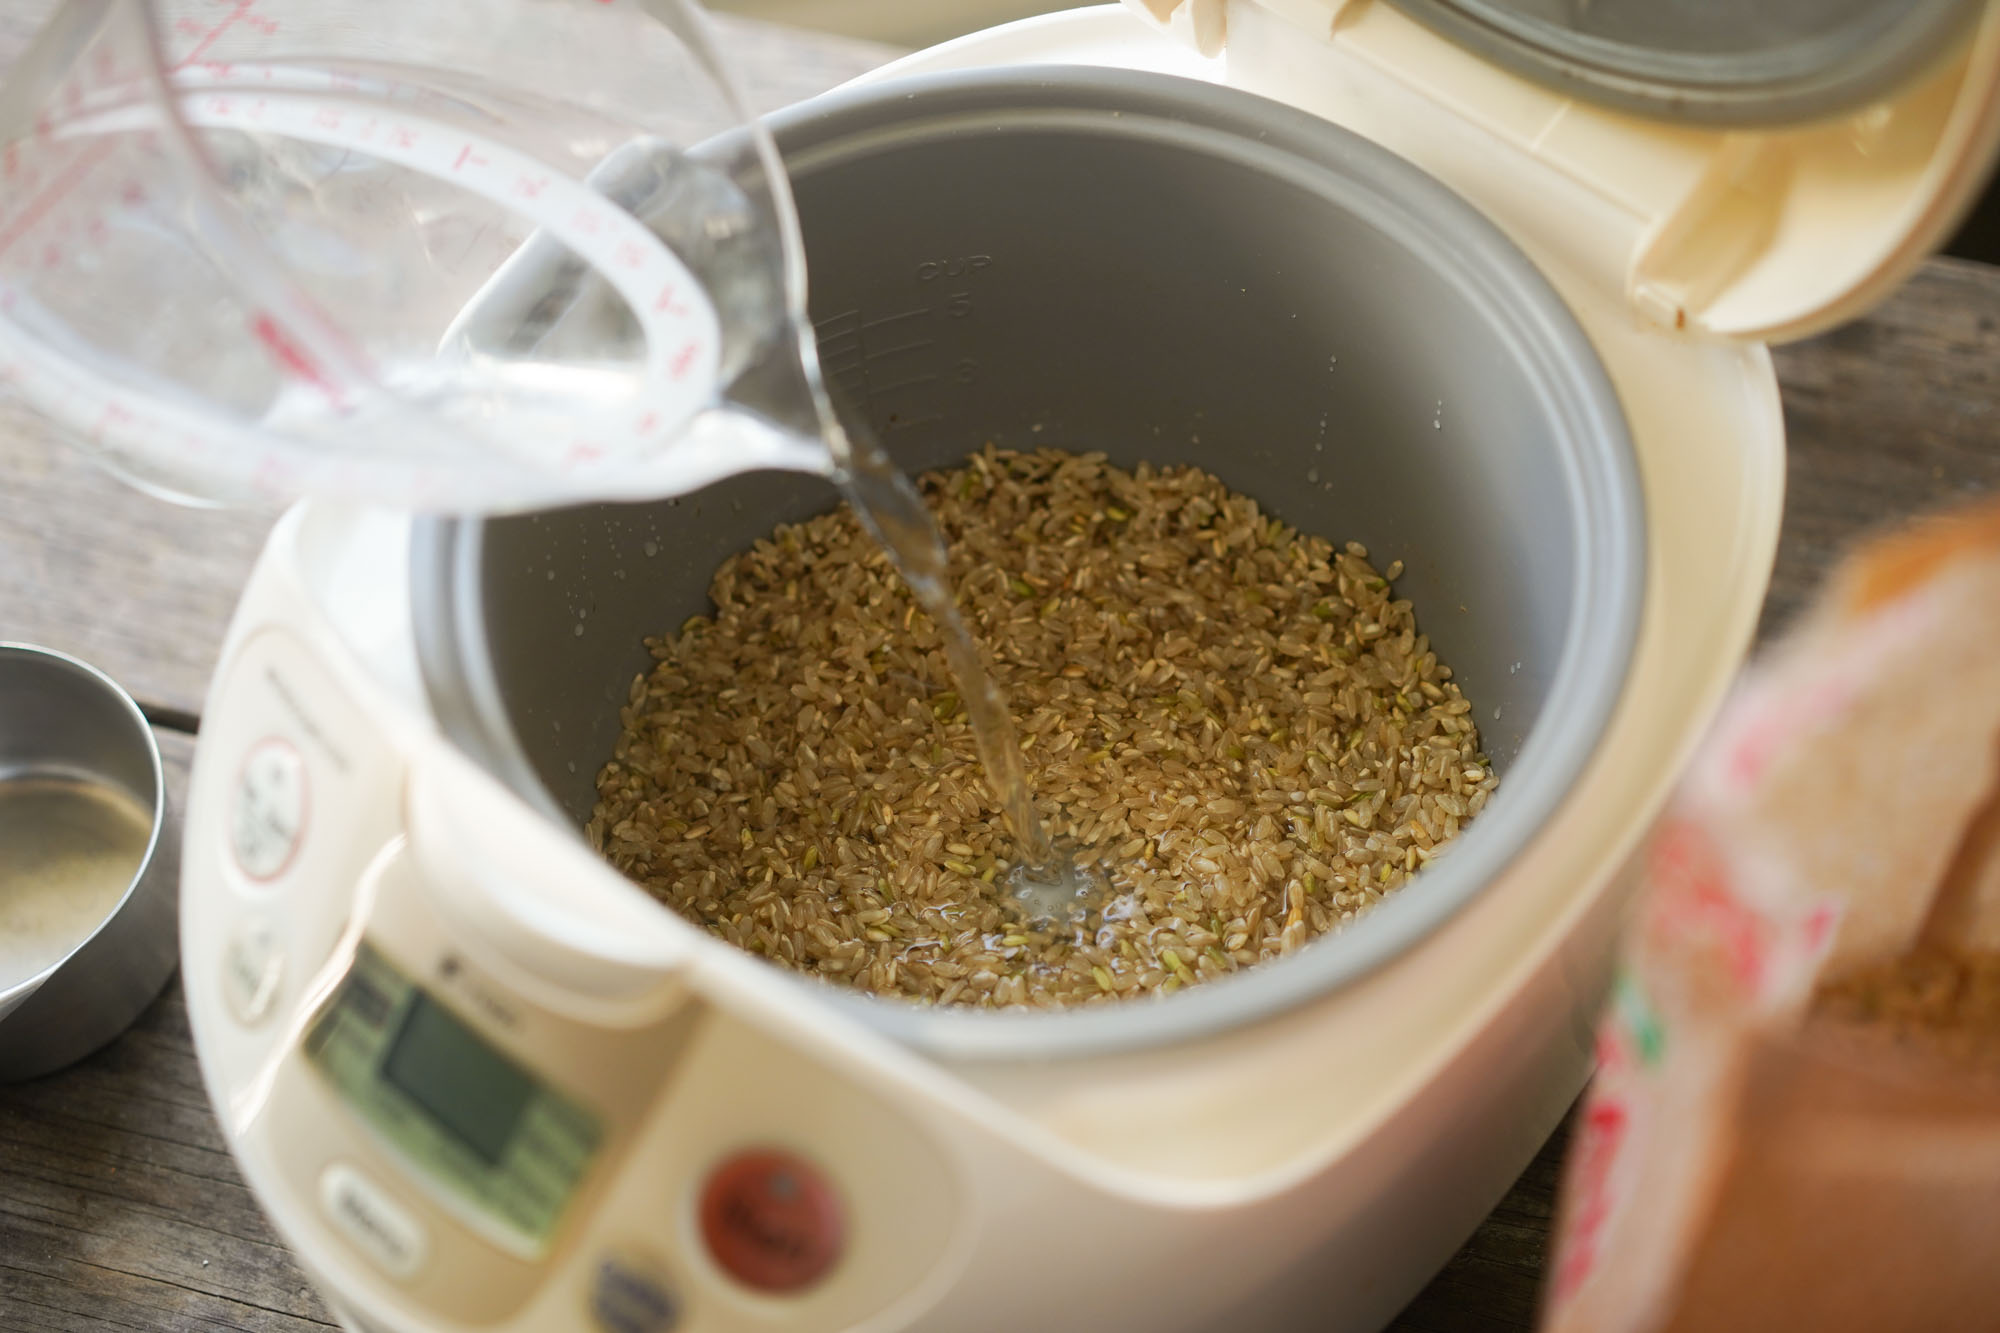 鑄鐵鍋煮糙米 : How to cook brown rice in cast iron pot